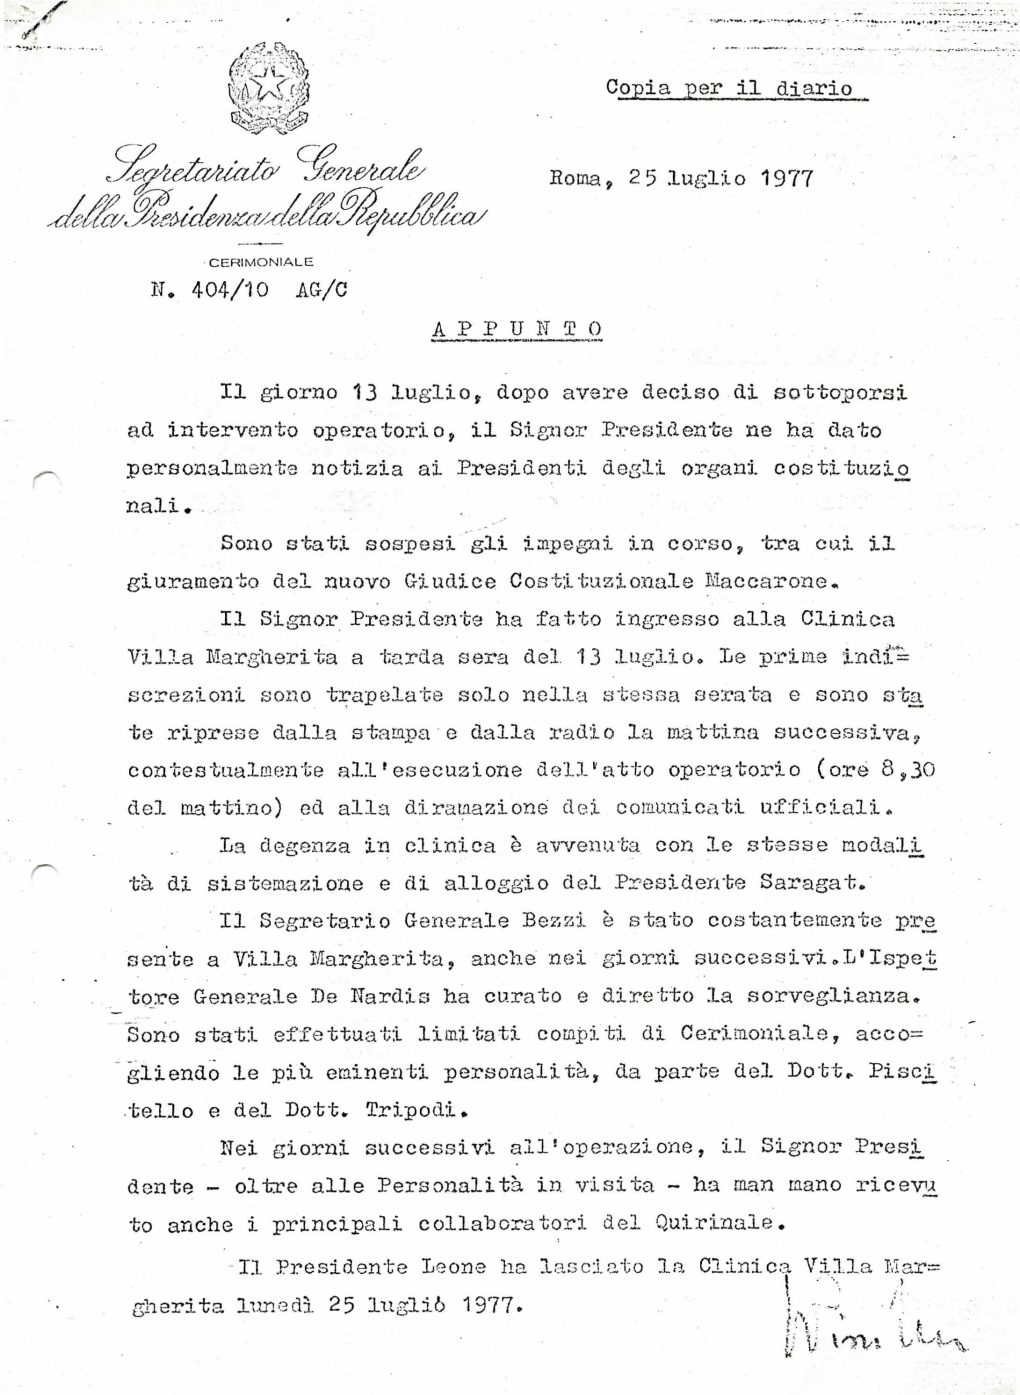 Copia Per Il Diario Segretariato Generale Roma, 2 5 Luglio 1977 N